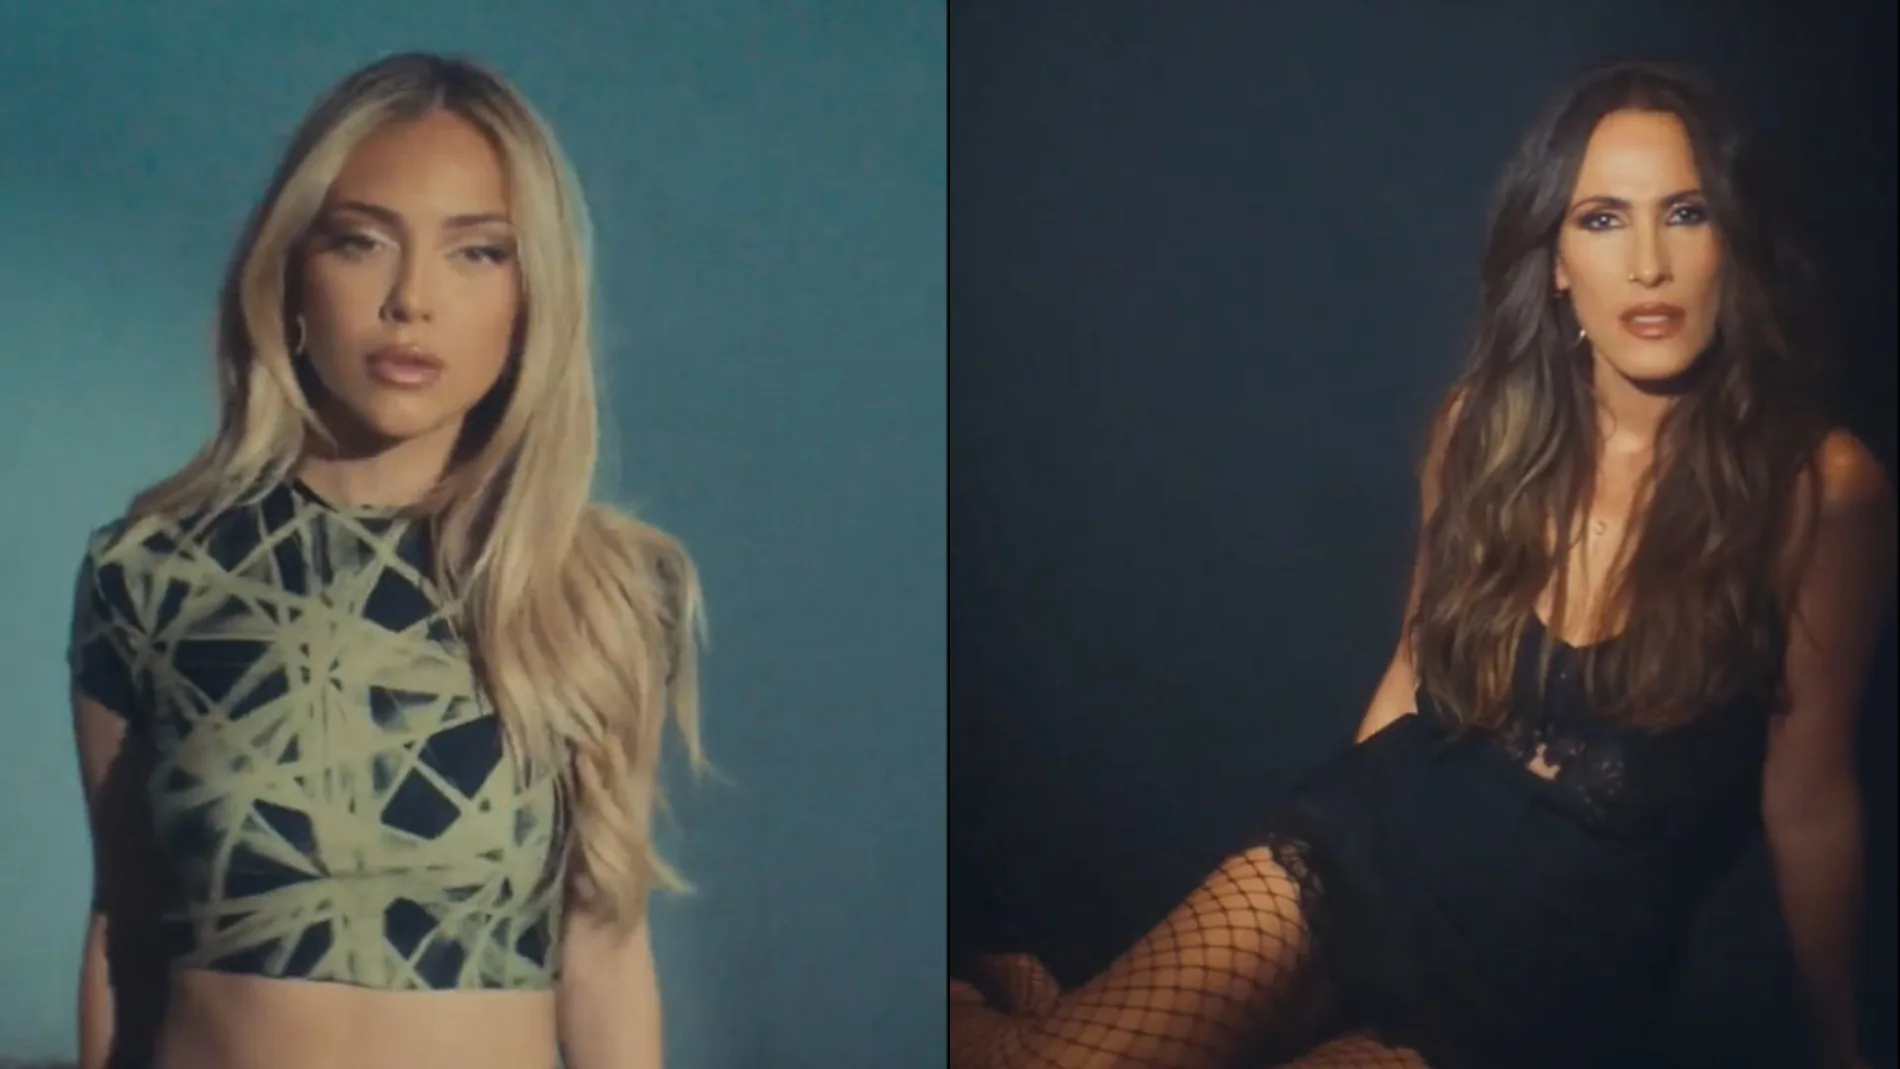 Fotogramas del videoclip de 'Diles', la nueva canción de Ana Mena y Malú.